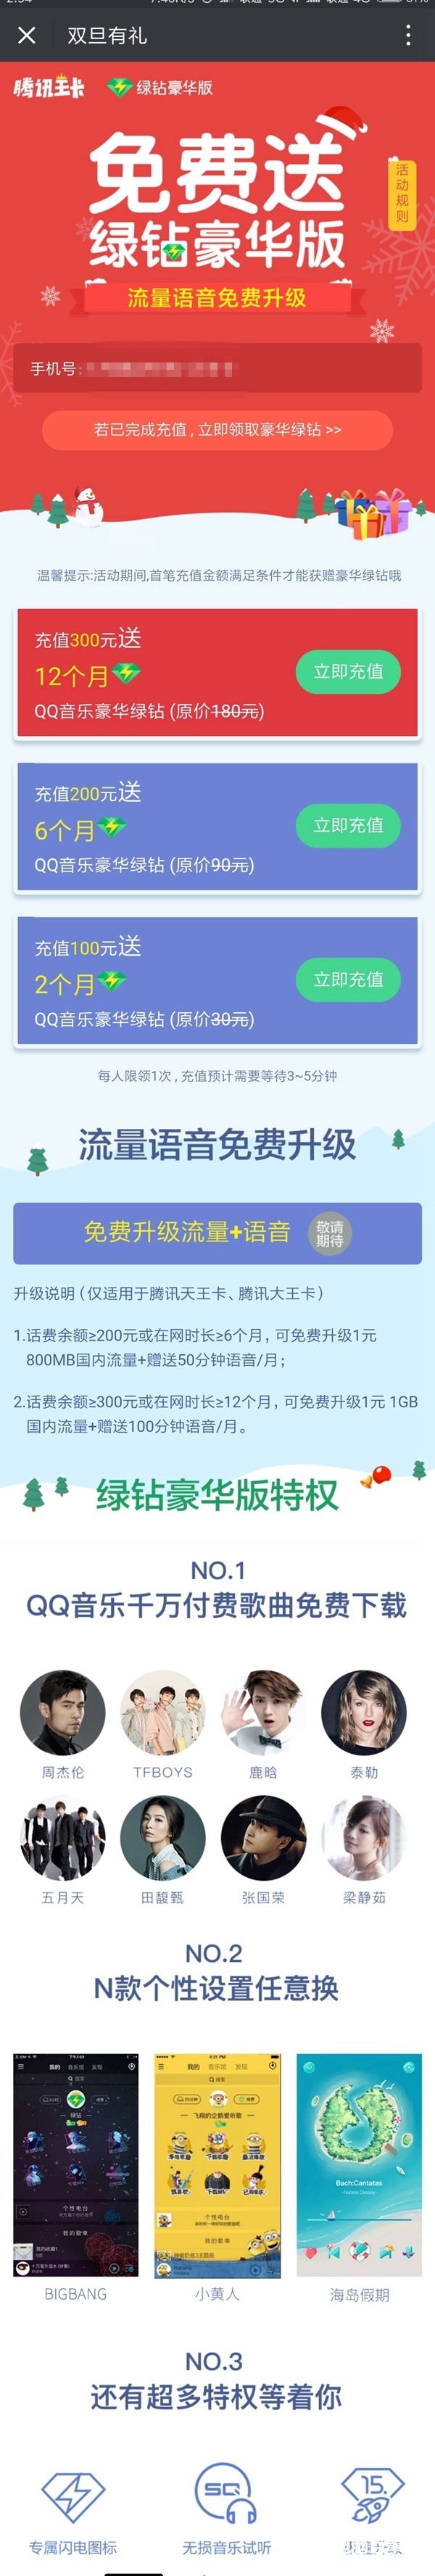 腾讯王卡双旦福利：送100分钟语音/月+1年QQ音乐豪华绿钻